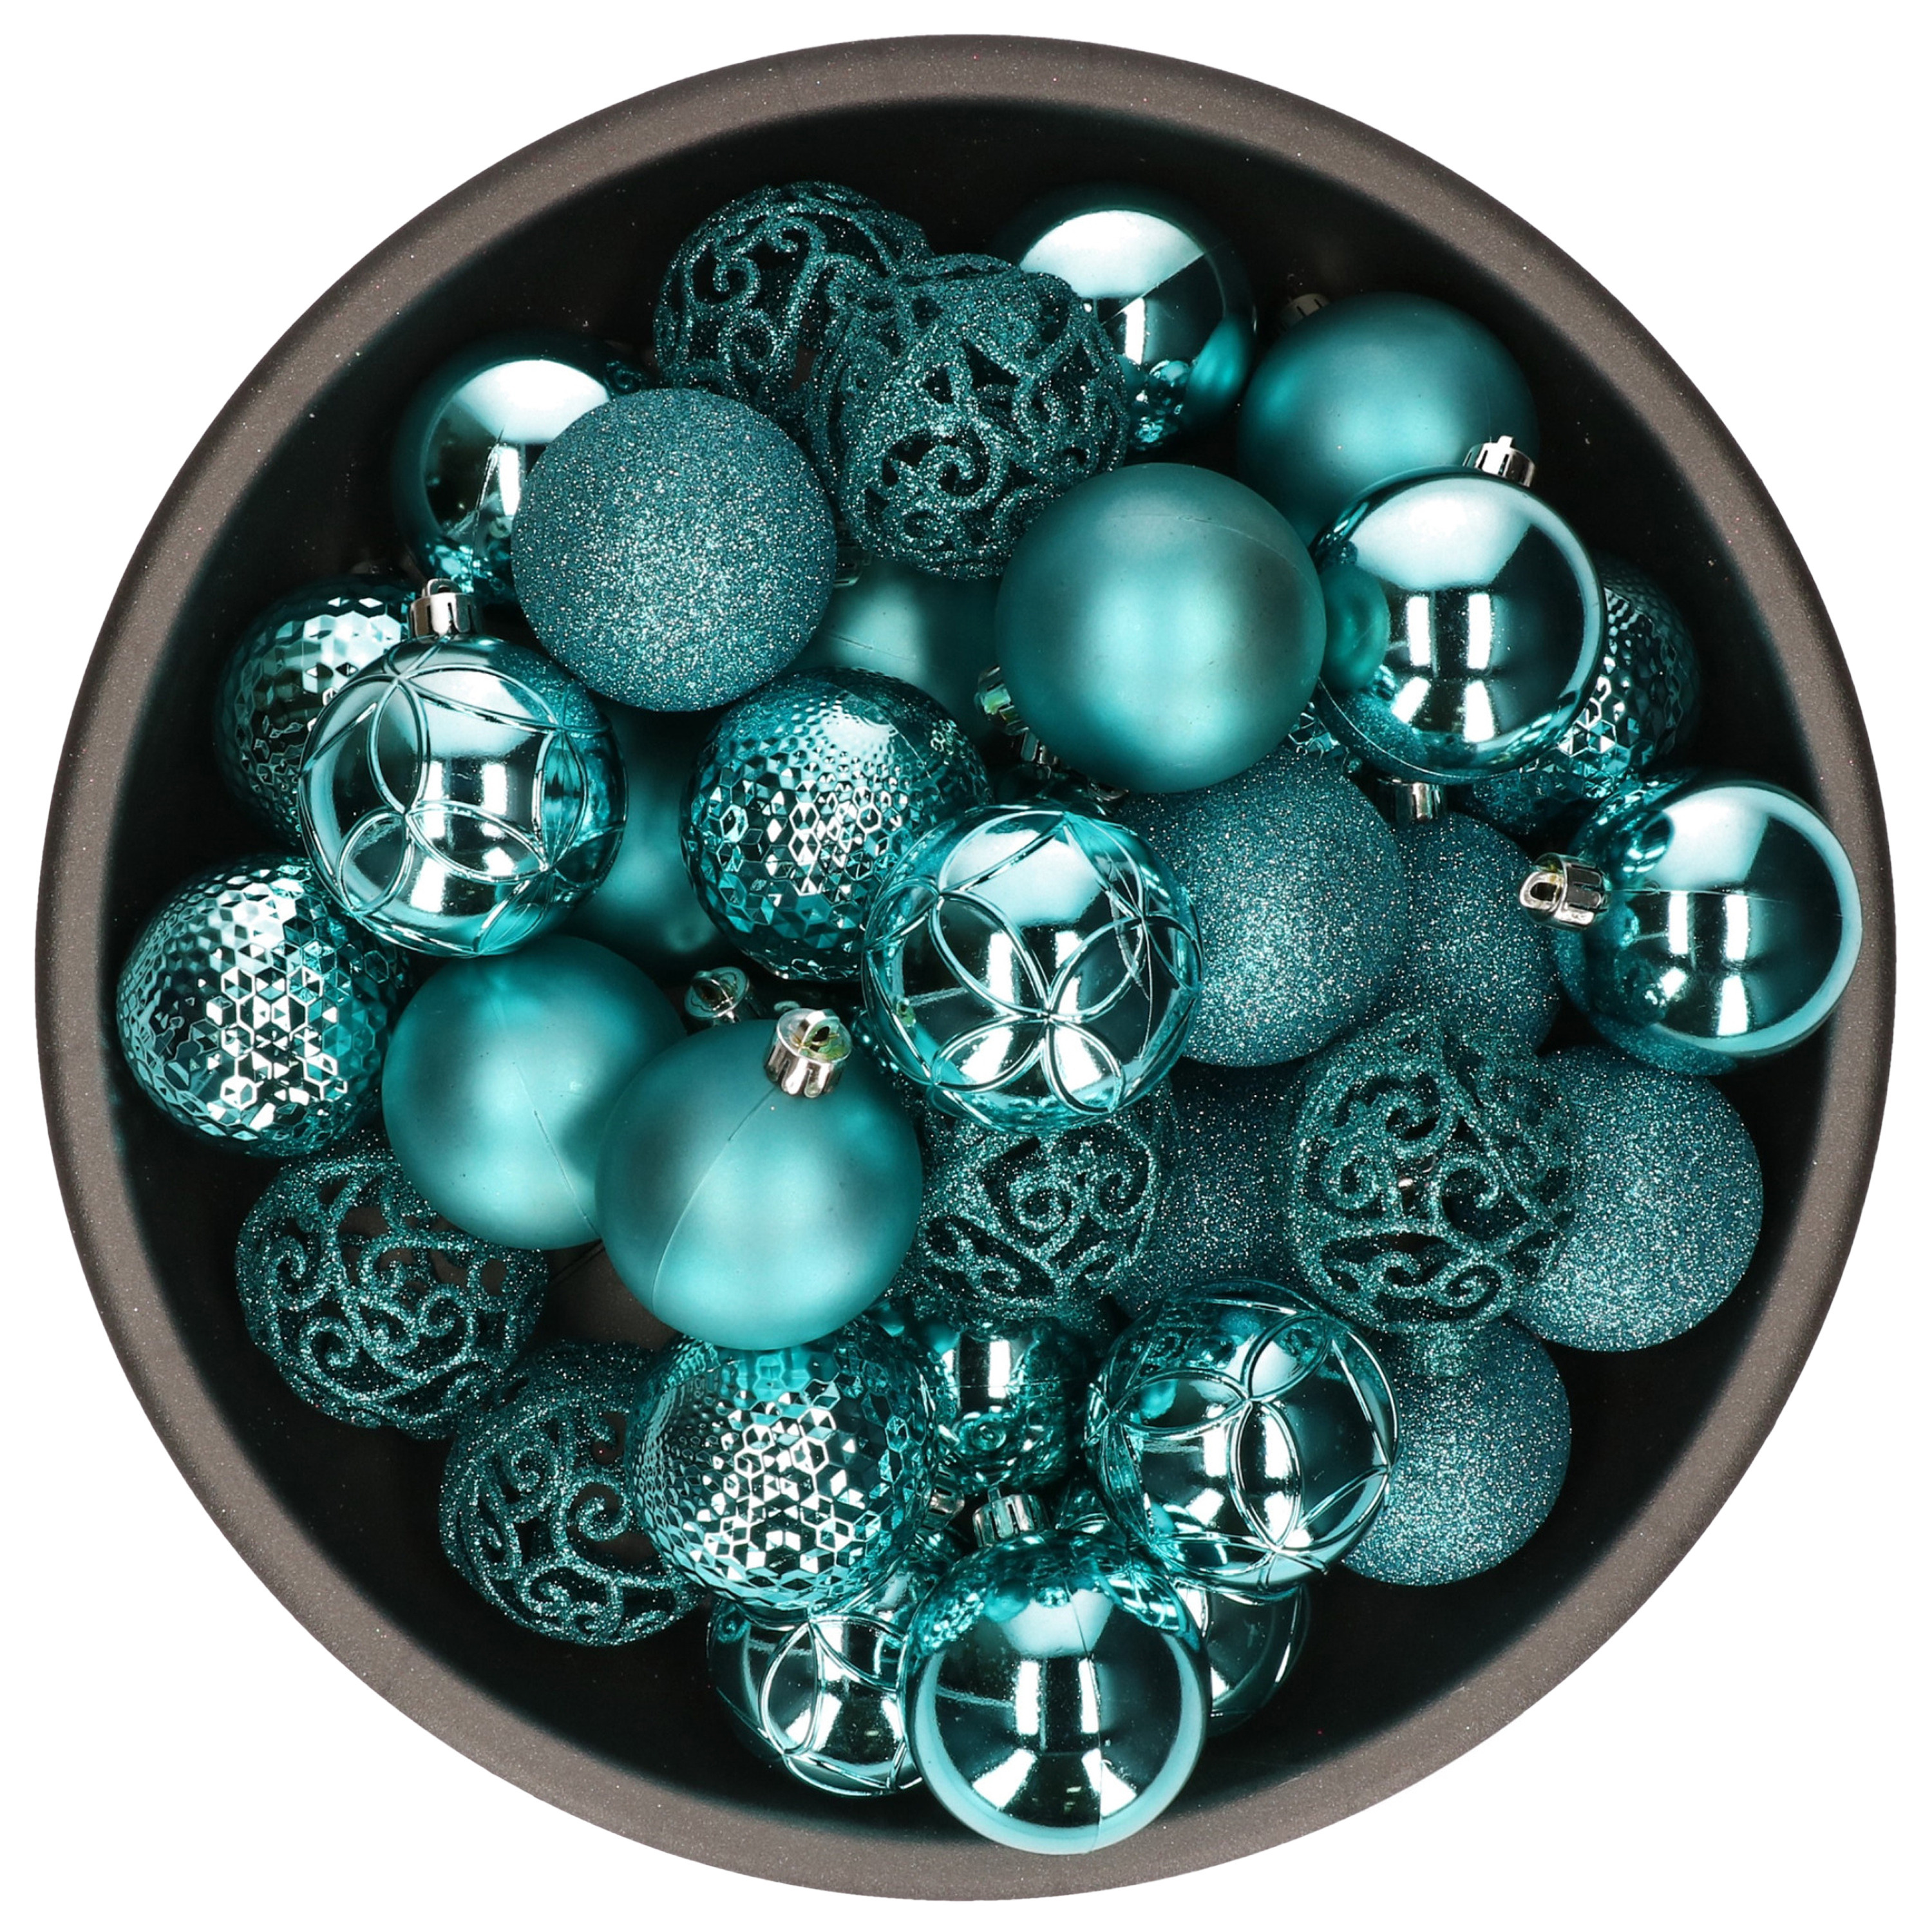 37x stuks kunststof kerstballen turquoise blauw 6 cm glans-mat-glitter mix